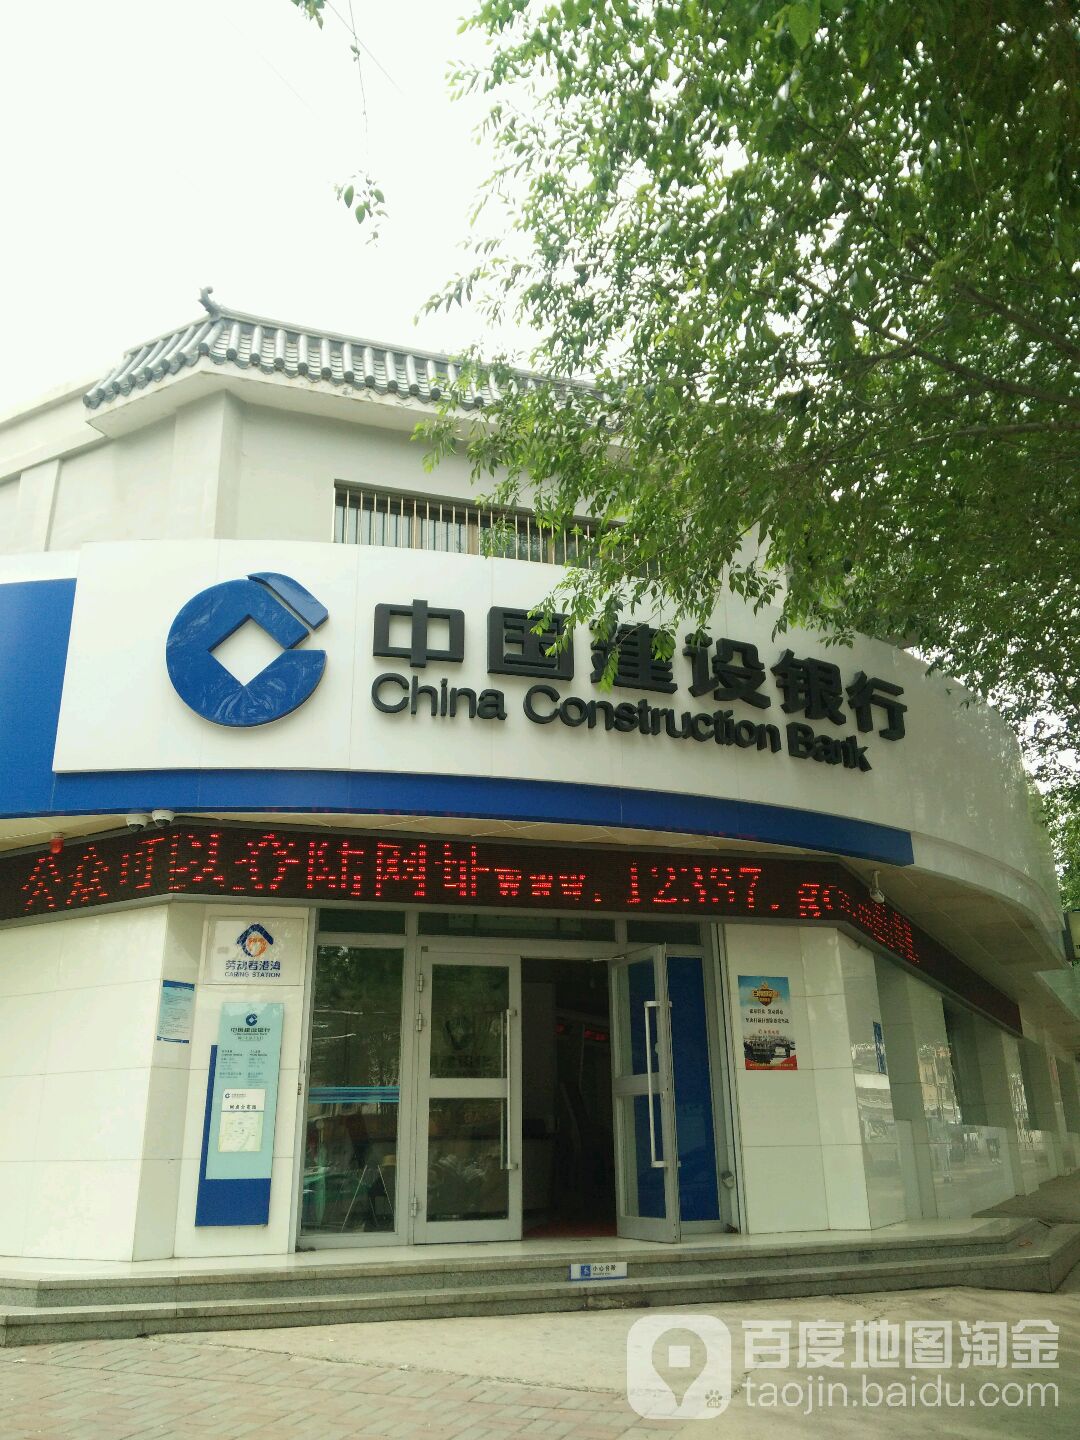 中國建設銀行(西寧上尕莊支行)